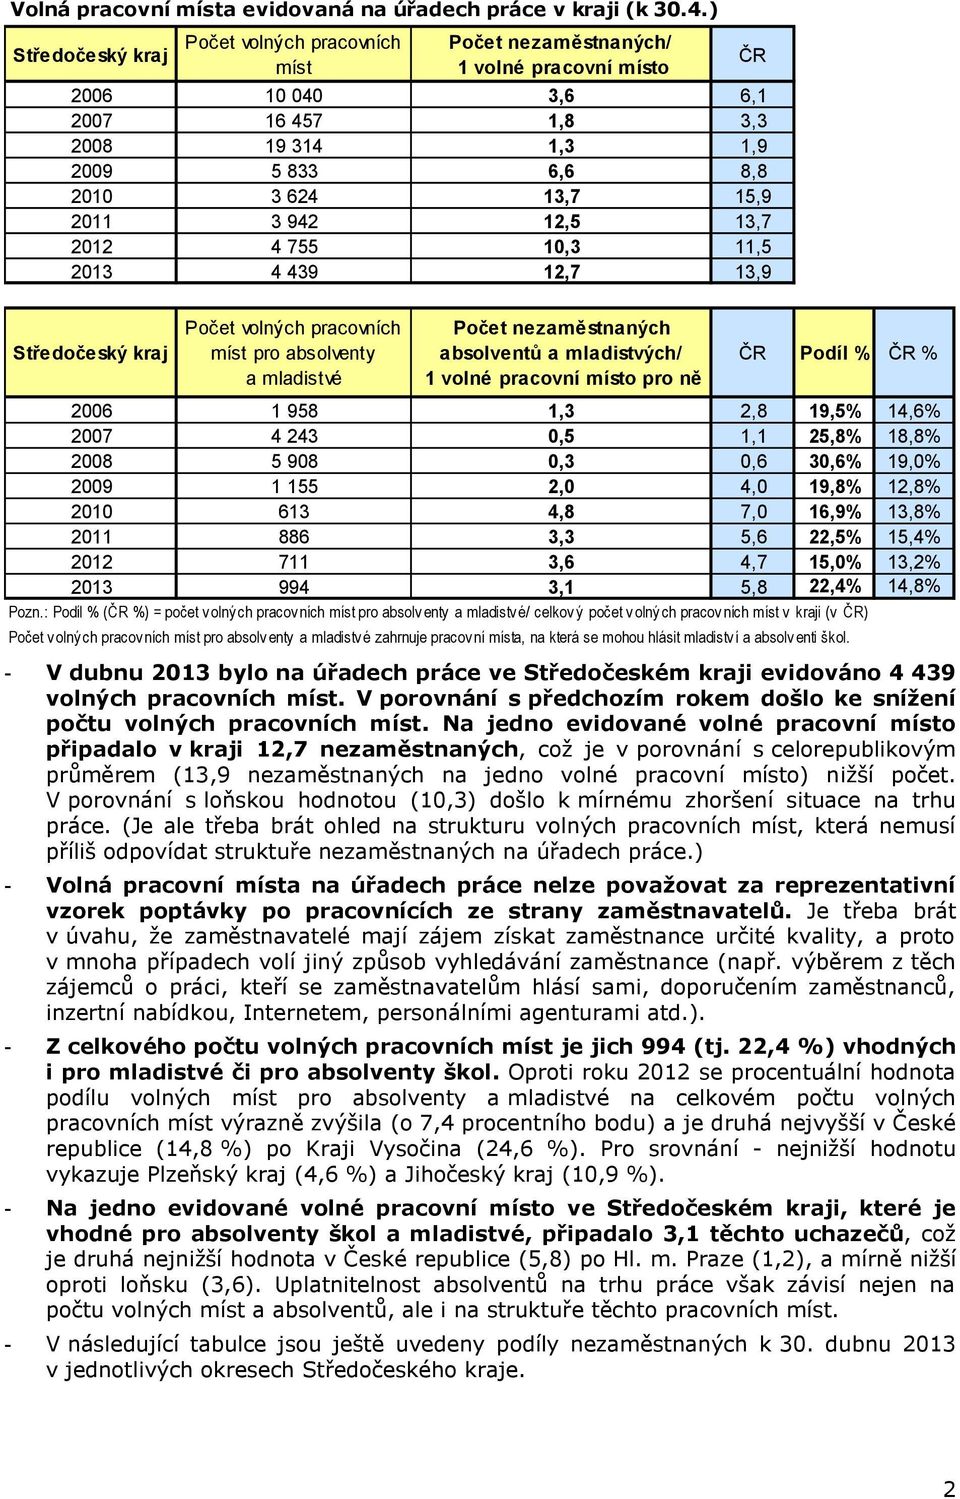 439 12,7 13,9 ČR volných pracovních míst pro absolventy a mladistvé a mladistvých/ 1 volné pracovní místo pro ně ČR Podíl % 2006 1 958 1,3 2,8 19,5% 14,6% 2007 4 243 0,5 1,1 25,8% 18,8% 2008 5 908